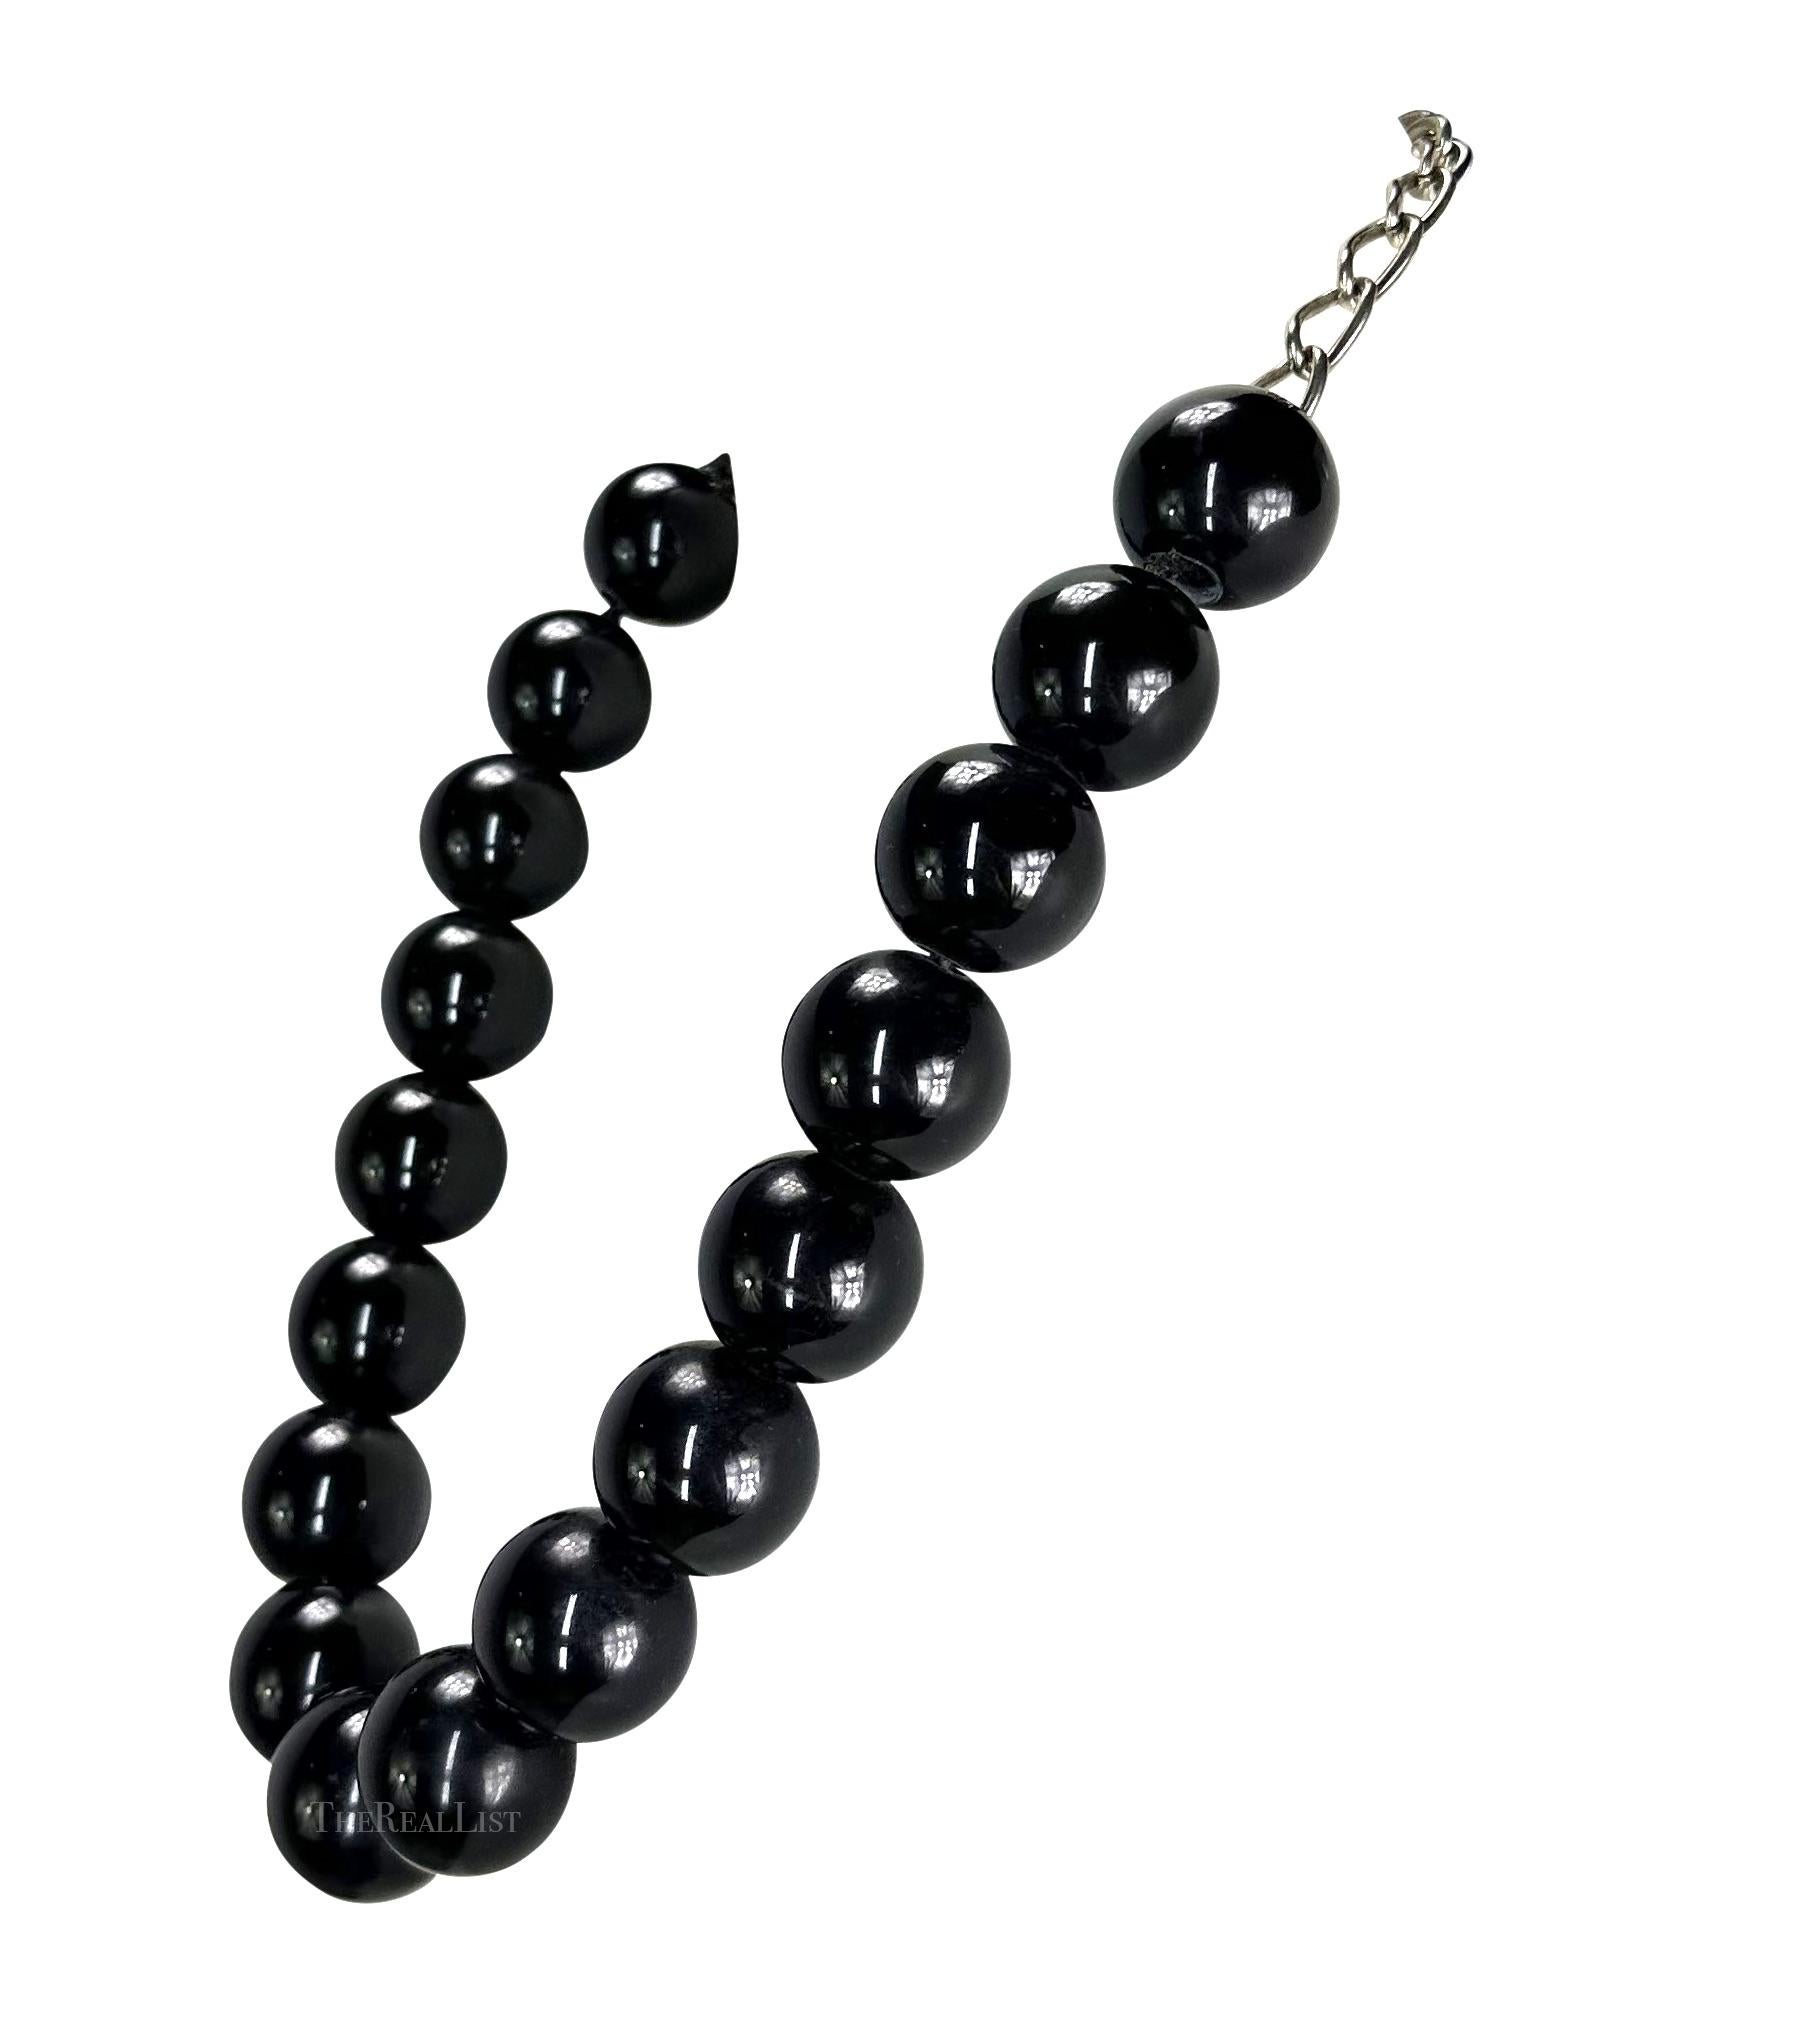 Wir präsentieren eine wunderschöne schwarze Gianni Versace Halskette mit Perlen, entworfen von Gianni Versace. Diese Halskette aus den späten 1980er Jahren besteht aus einem Strang großer schwarzer Perlen und ist mit einem silberfarbenen